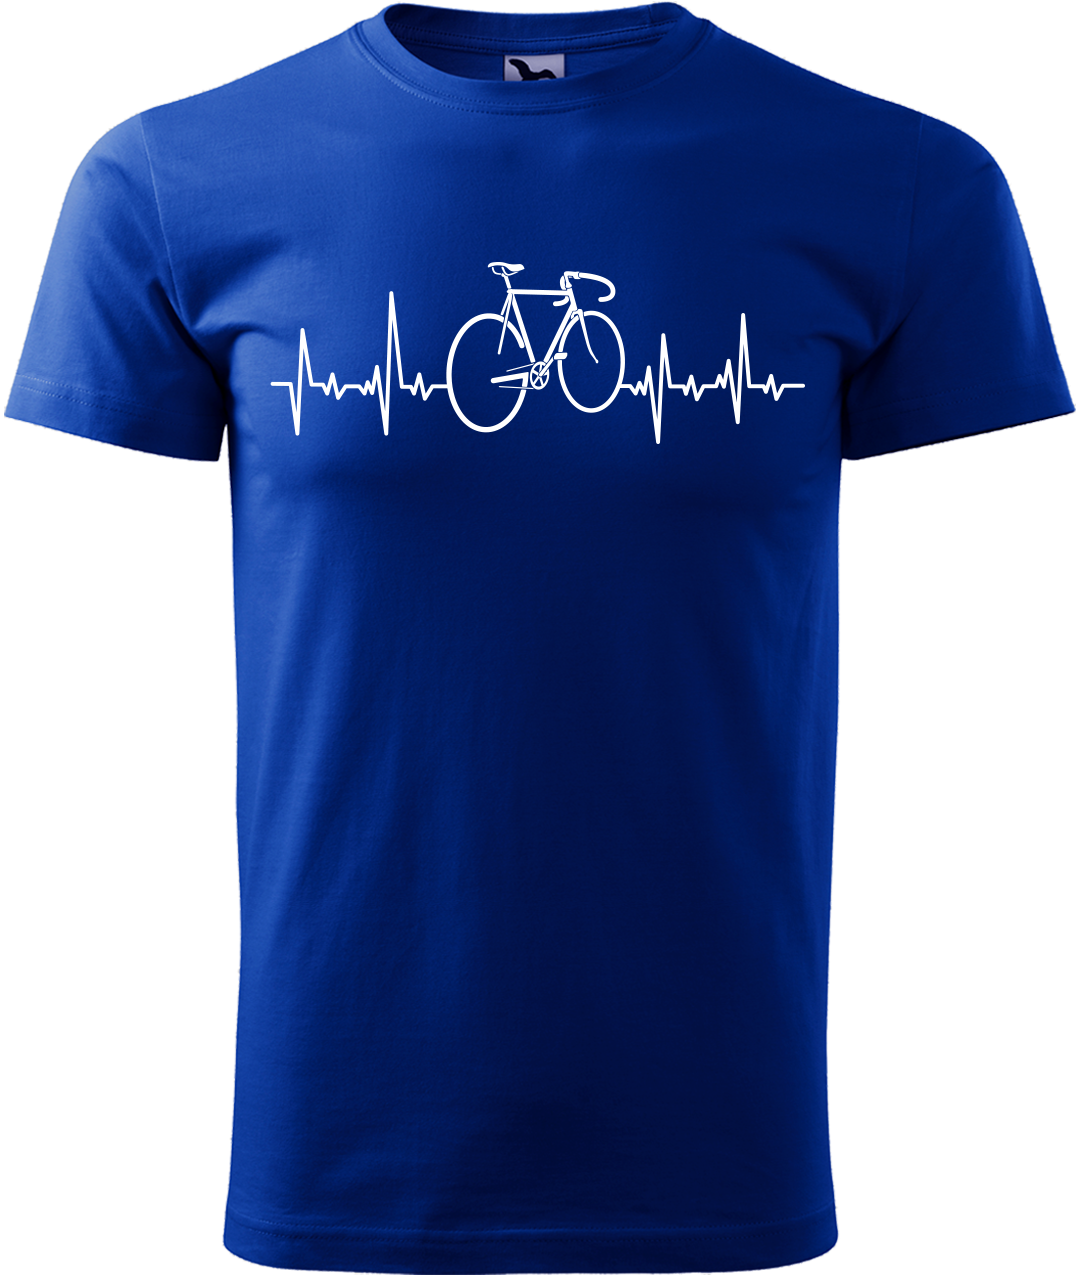 Pánské tričko s kolem - Cyklistův kardiogram Velikost: L, Barva: Královská modrá (05)